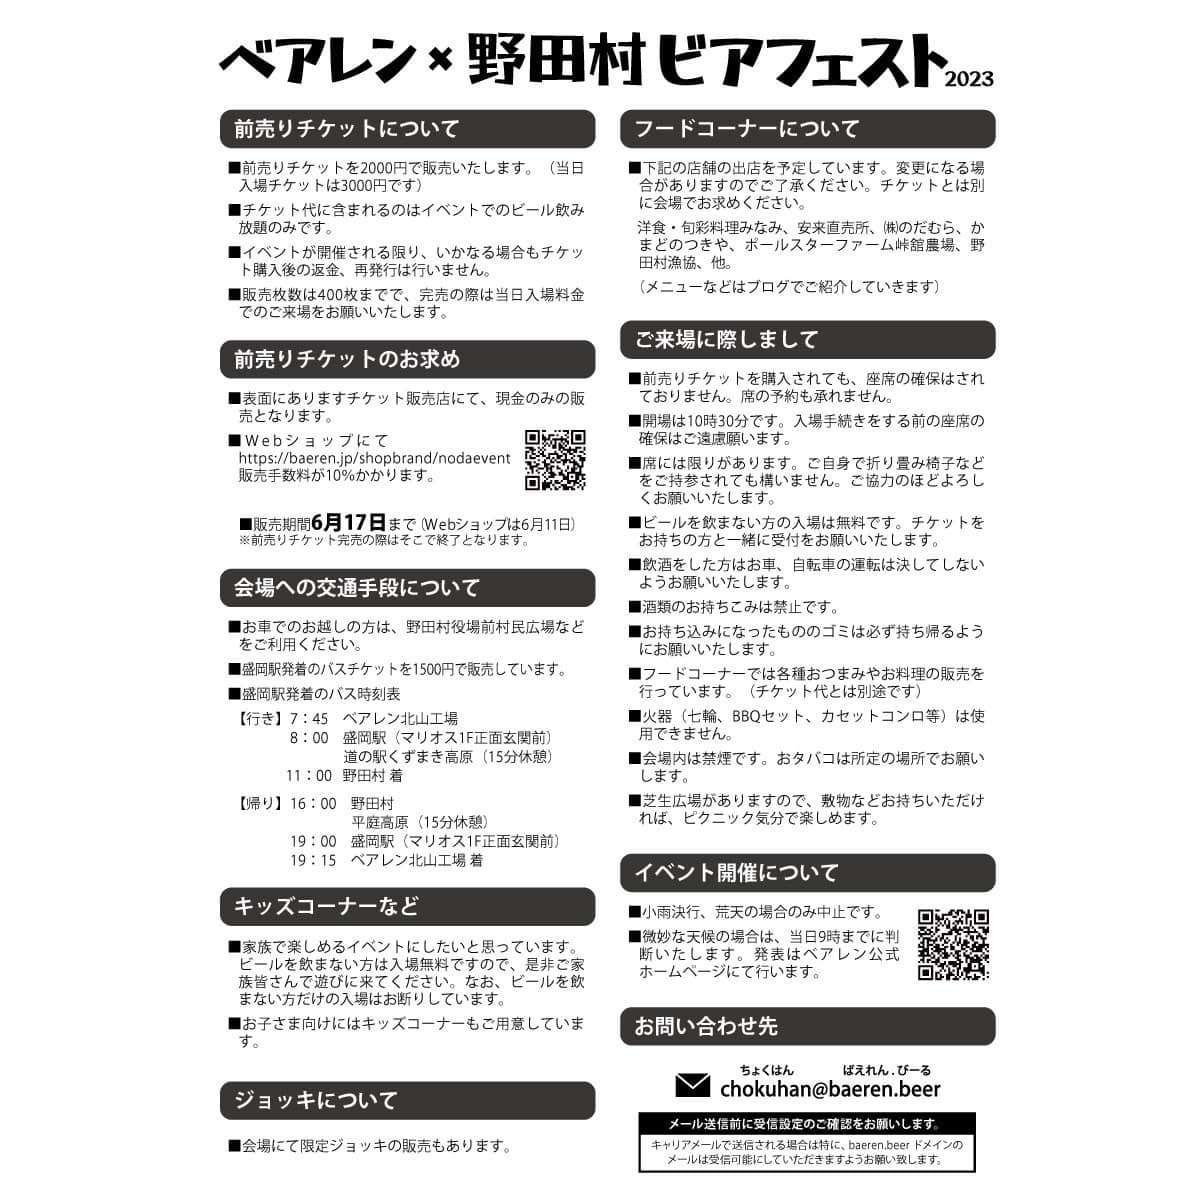 【イベント】ベアレン×野田村ビアフェス出店のお知らせ